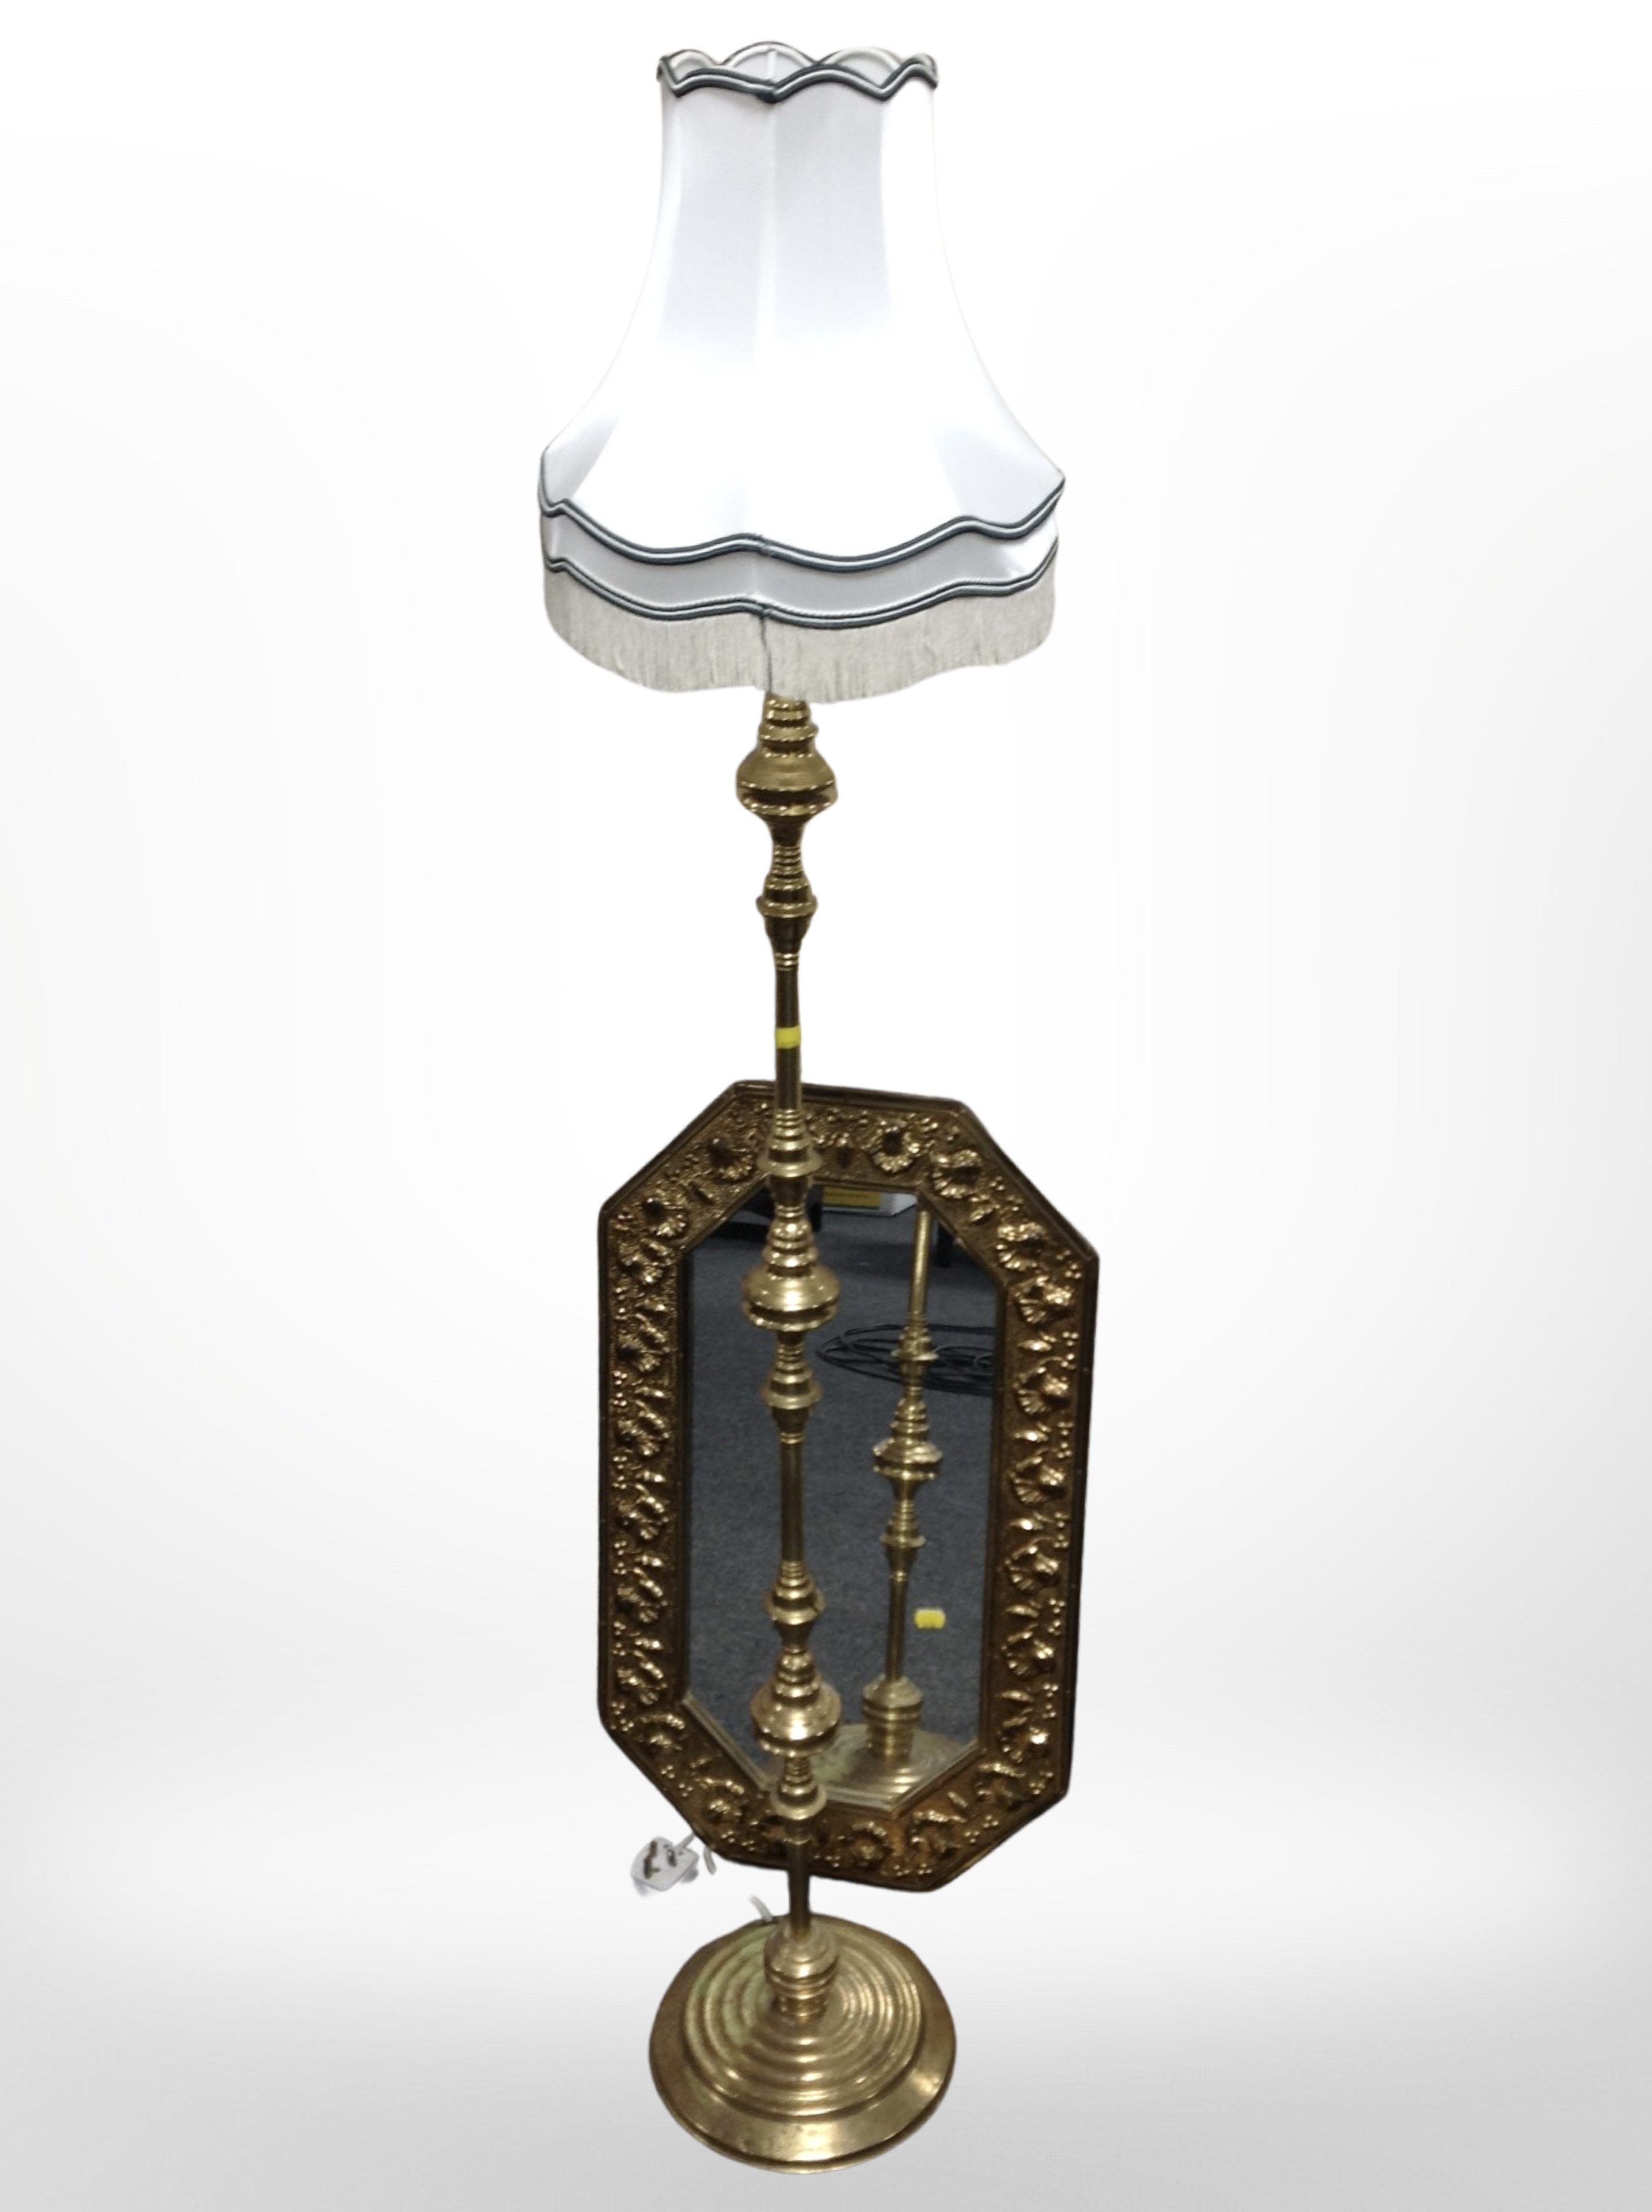 An embossed brass octagonal mirror, and a brass standard lamp.